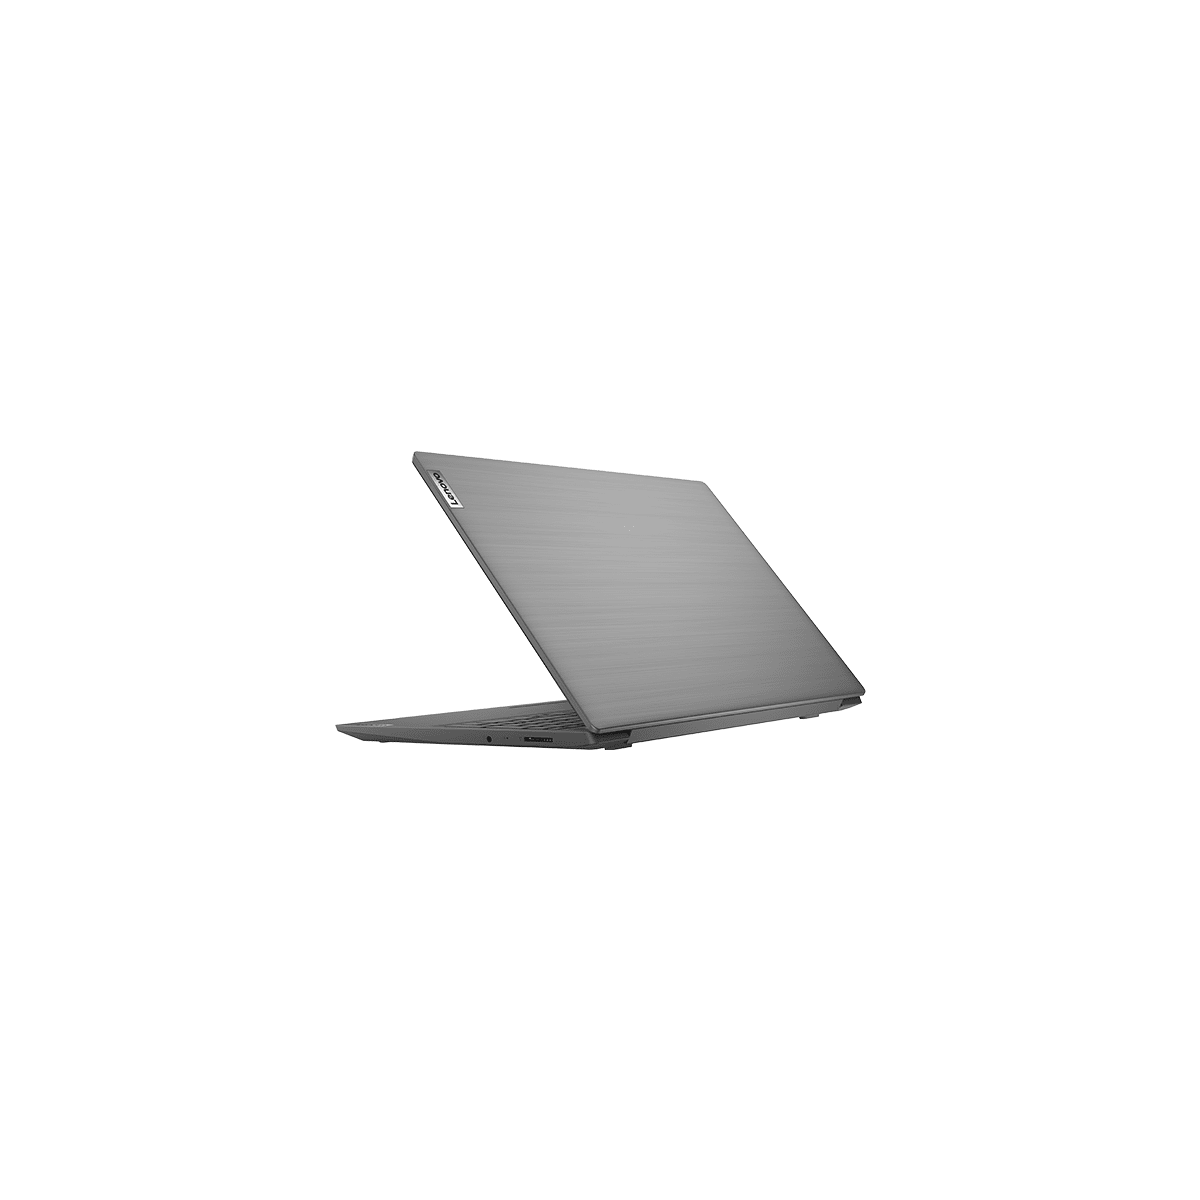 LENOVO 82C500JDIX, Notebook mit 15,6 Grau GB RAM, 256 GB Intel®, Display, SSD, Zoll 4